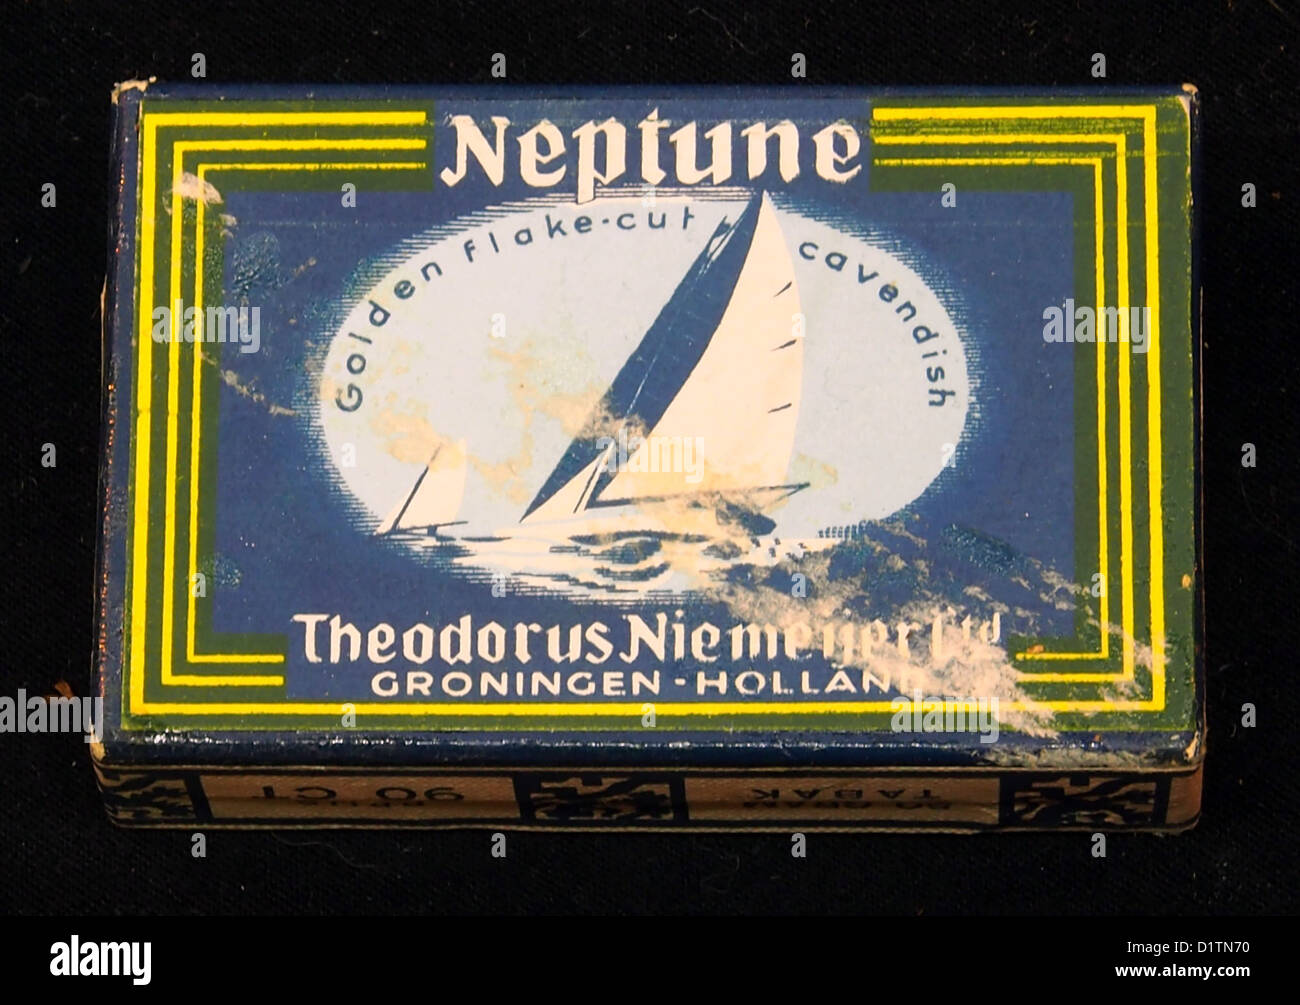 Neptune, Golden flake-cut cavendish tabak, Theodorus Niemeijer Ltd. Stock Photo